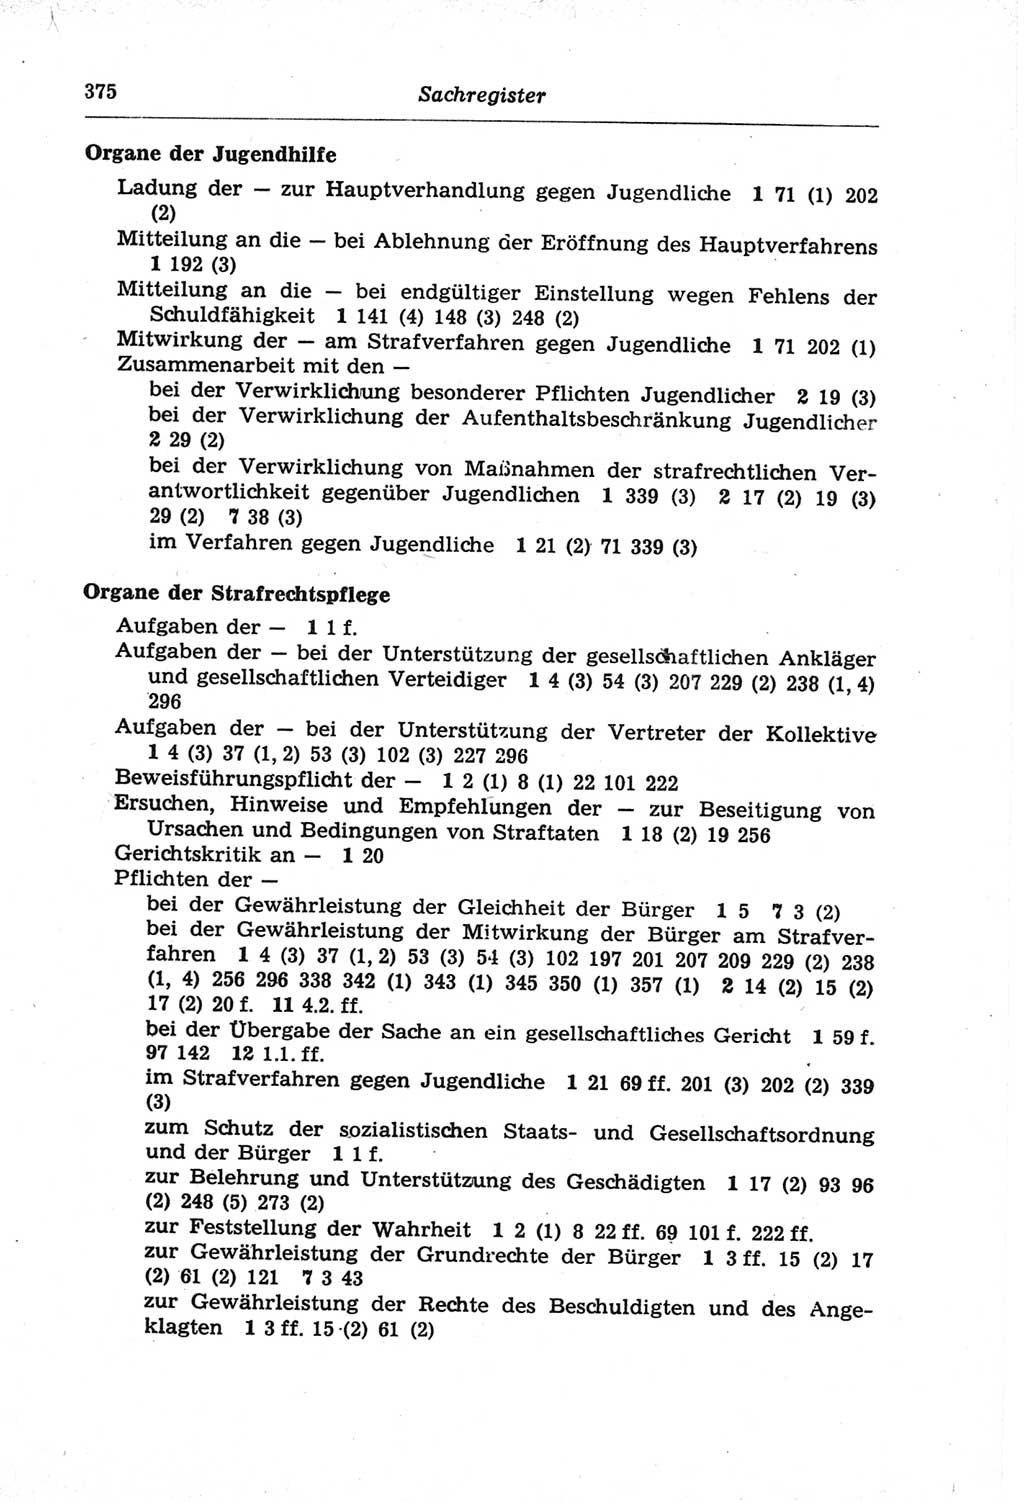 Strafprozeßordnung (StPO) der Deutschen Demokratischen Republik (DDR) und angrenzende Gesetze und Bestimmungen 1968, Seite 375 (StPO Ges. Bstgn. DDR 1968, S. 375)